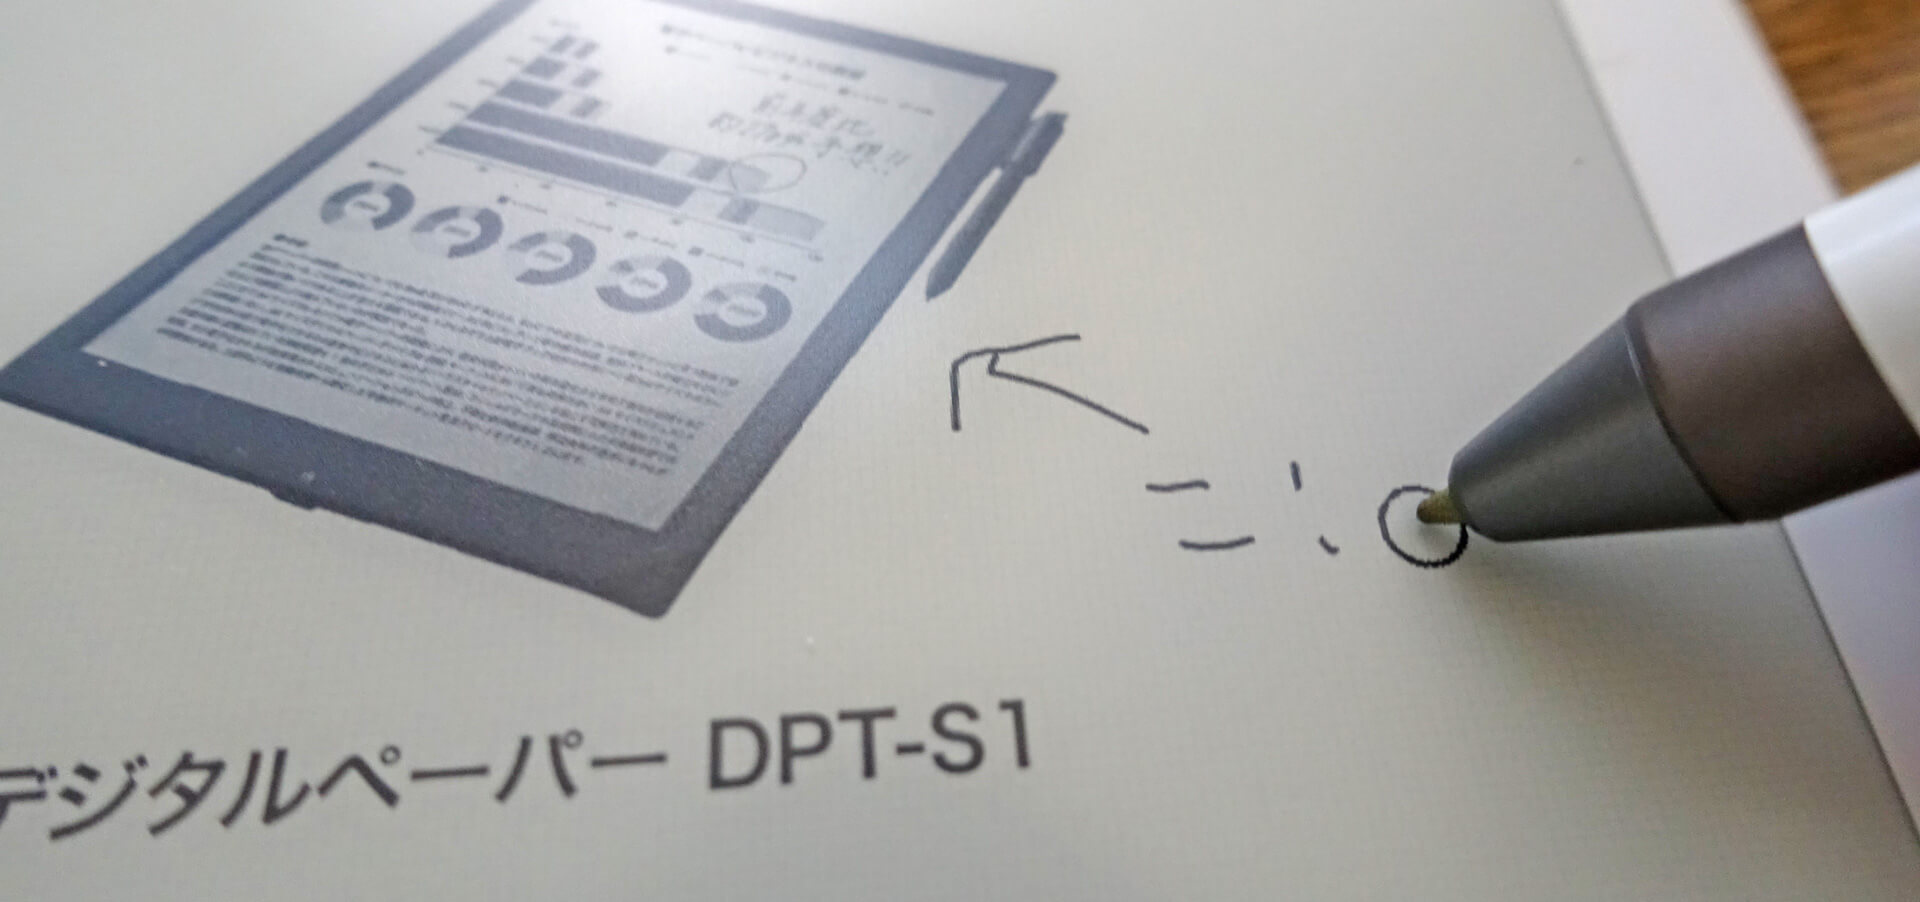 Sony デジタルペーパー DPT-RP1レビュー。超軽量で持ち運びやすいが 